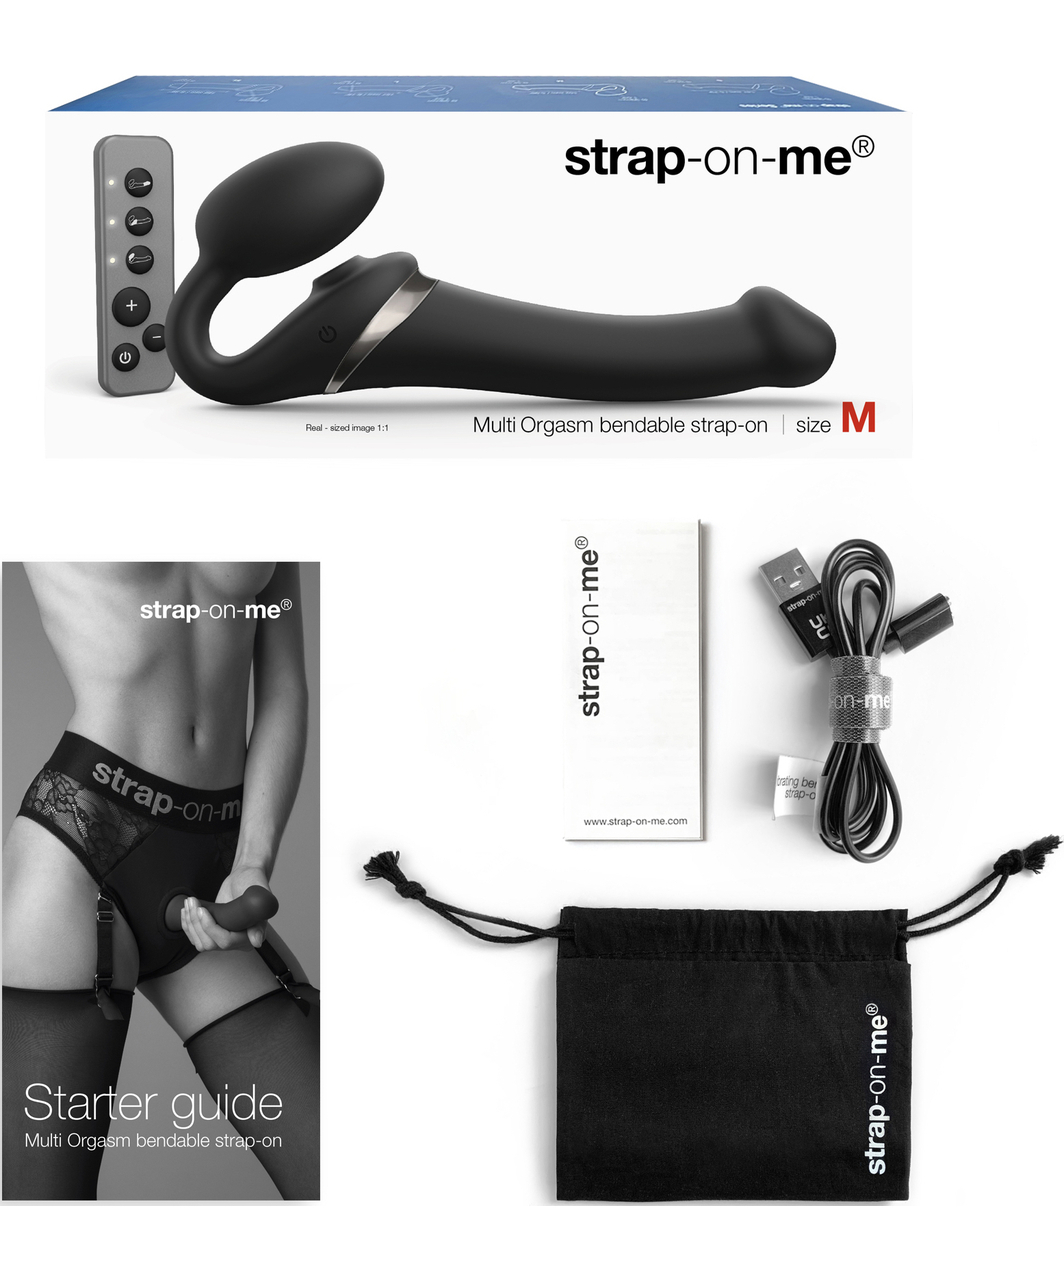 Strap On Me Multi Orgasm Bendable Strap On vibrators